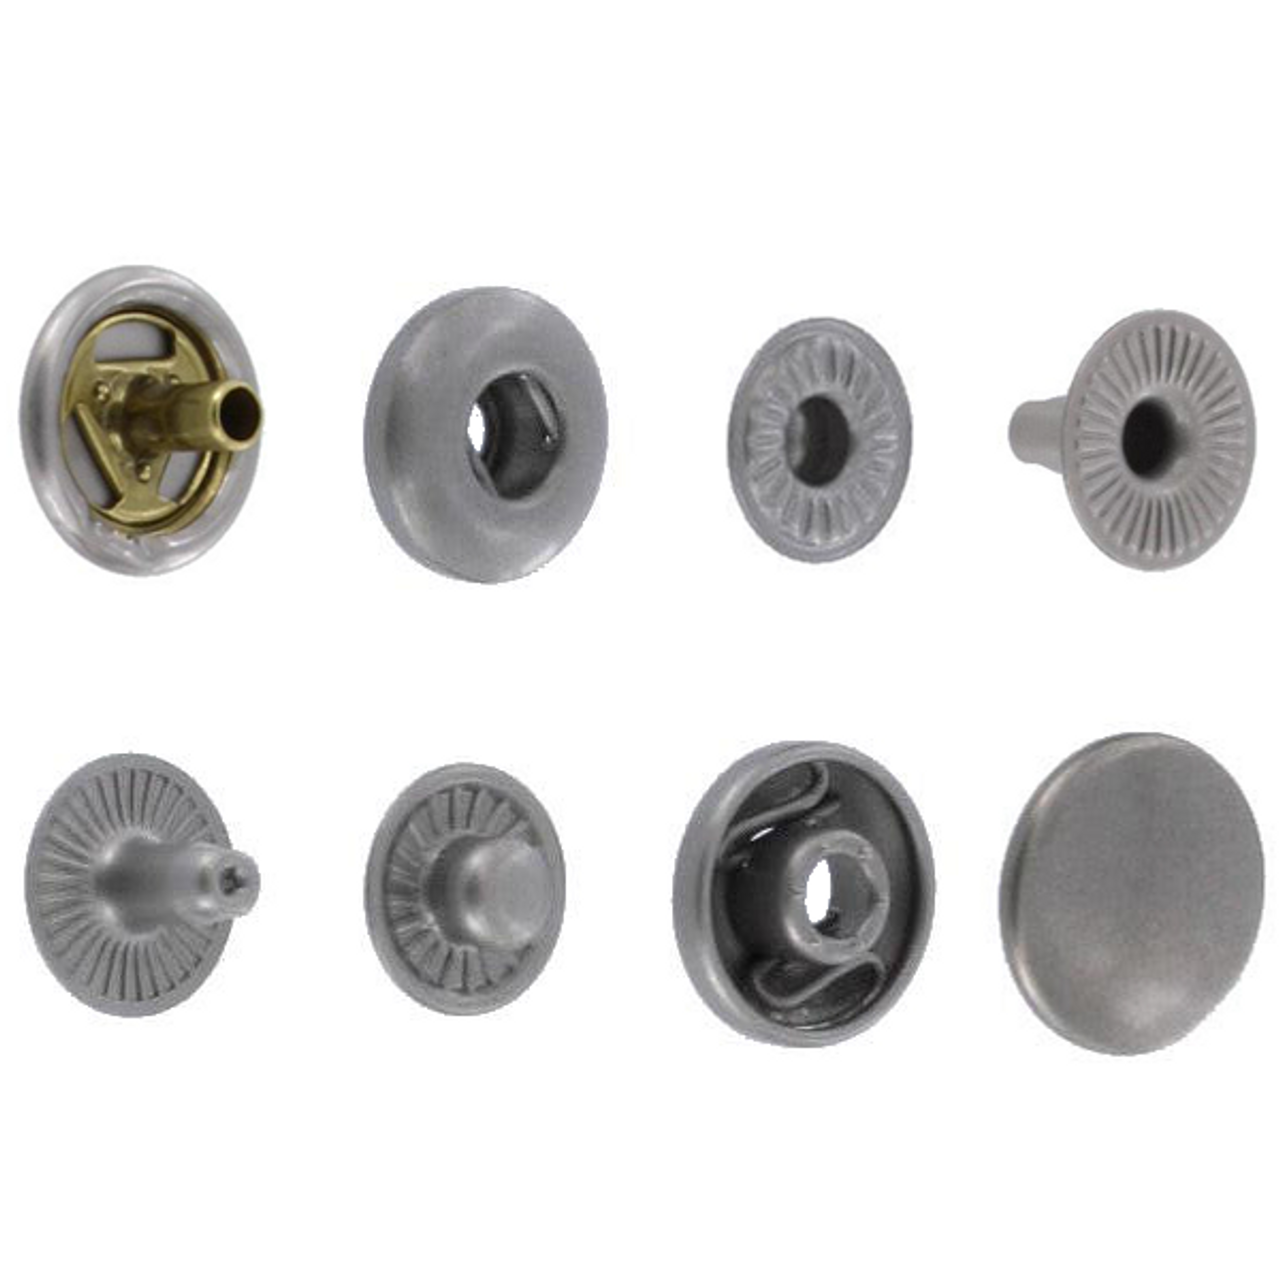 100 sets of steel silver -Hook eye bra closure - Sewing Supplies